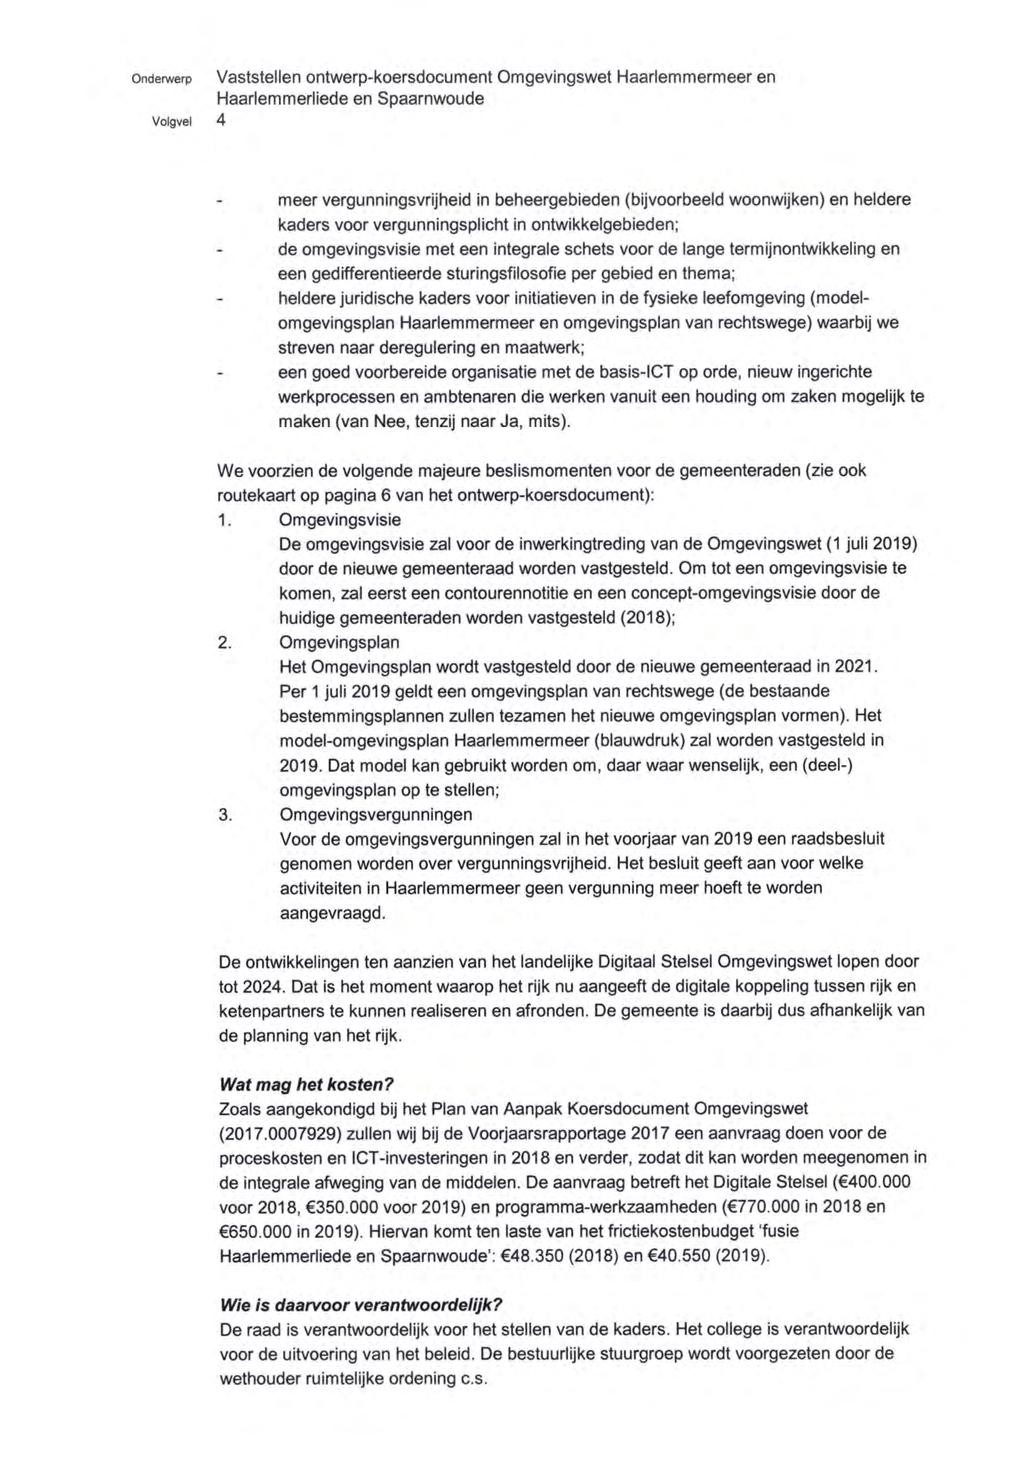 onderwerp Volgvel 4 Vaststellen ontwerp-koersdocument Omgevingswet Haarlemmermeer en Haarlemmerliede en Spaarnwoude meer vergunningsvrijheid in beheergebieden (bijvoorbeeld woonwijken) en heldere